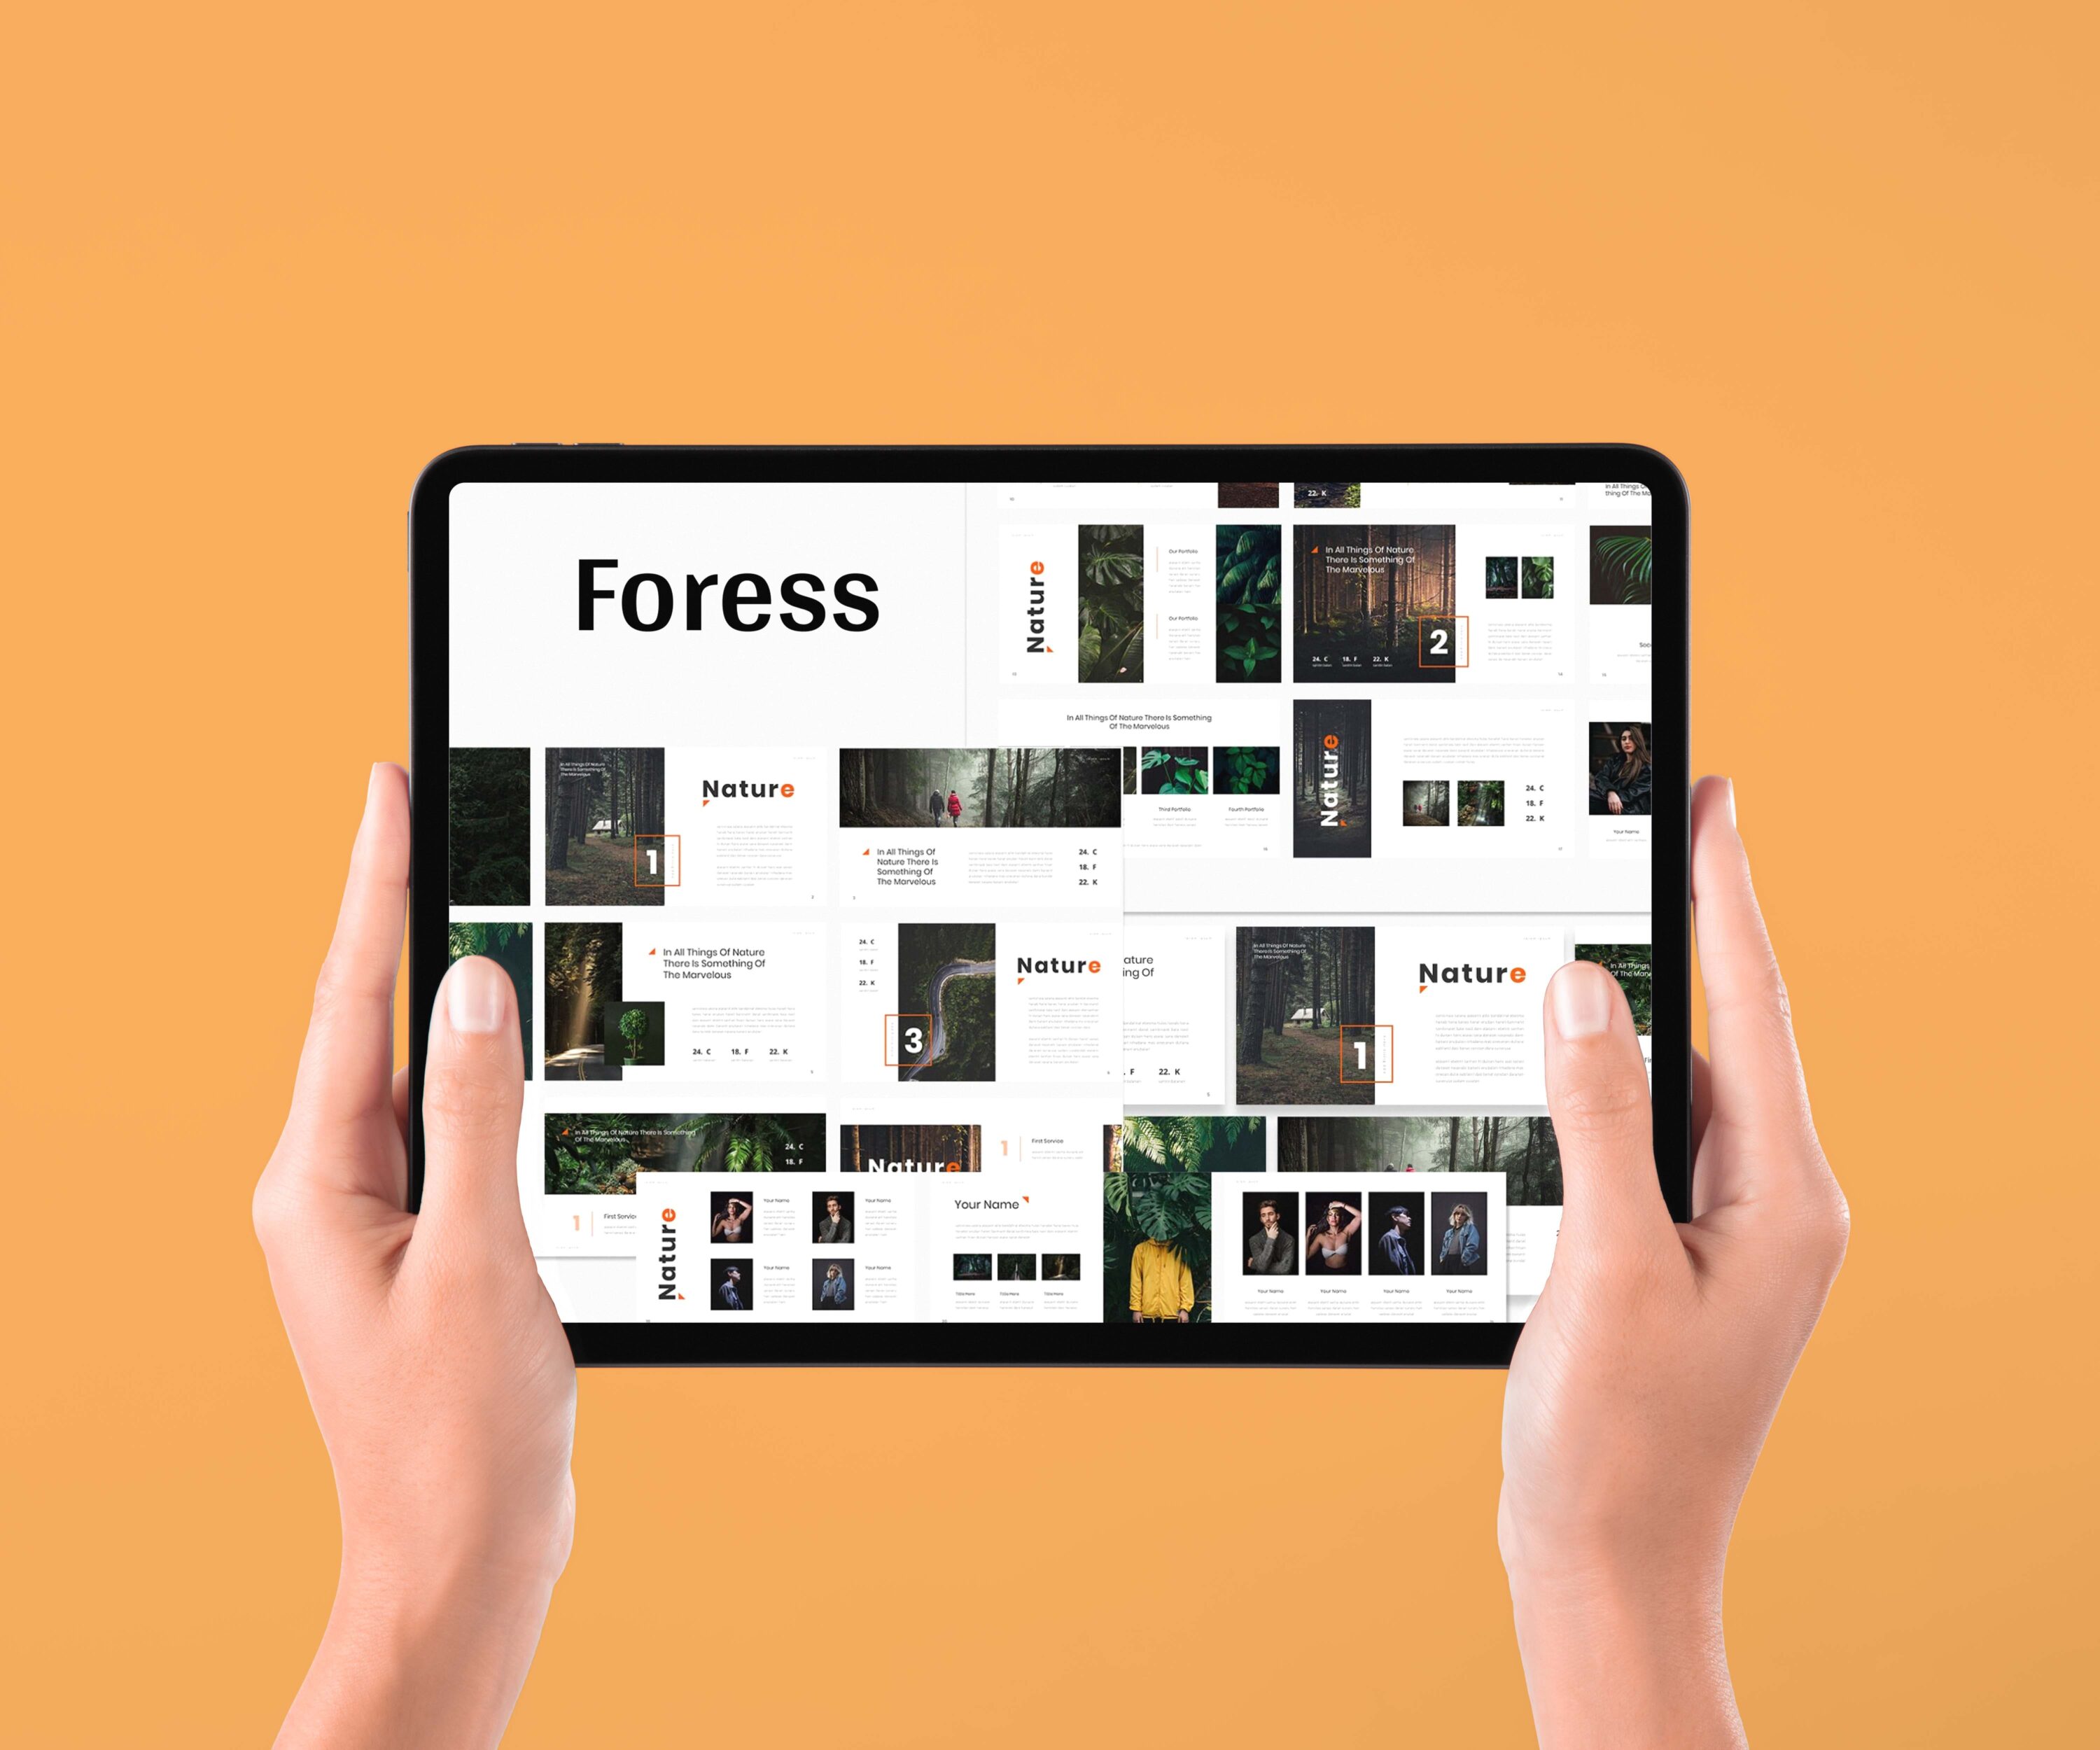 Foress - Nature Google Slide - Mockup on Tablet.